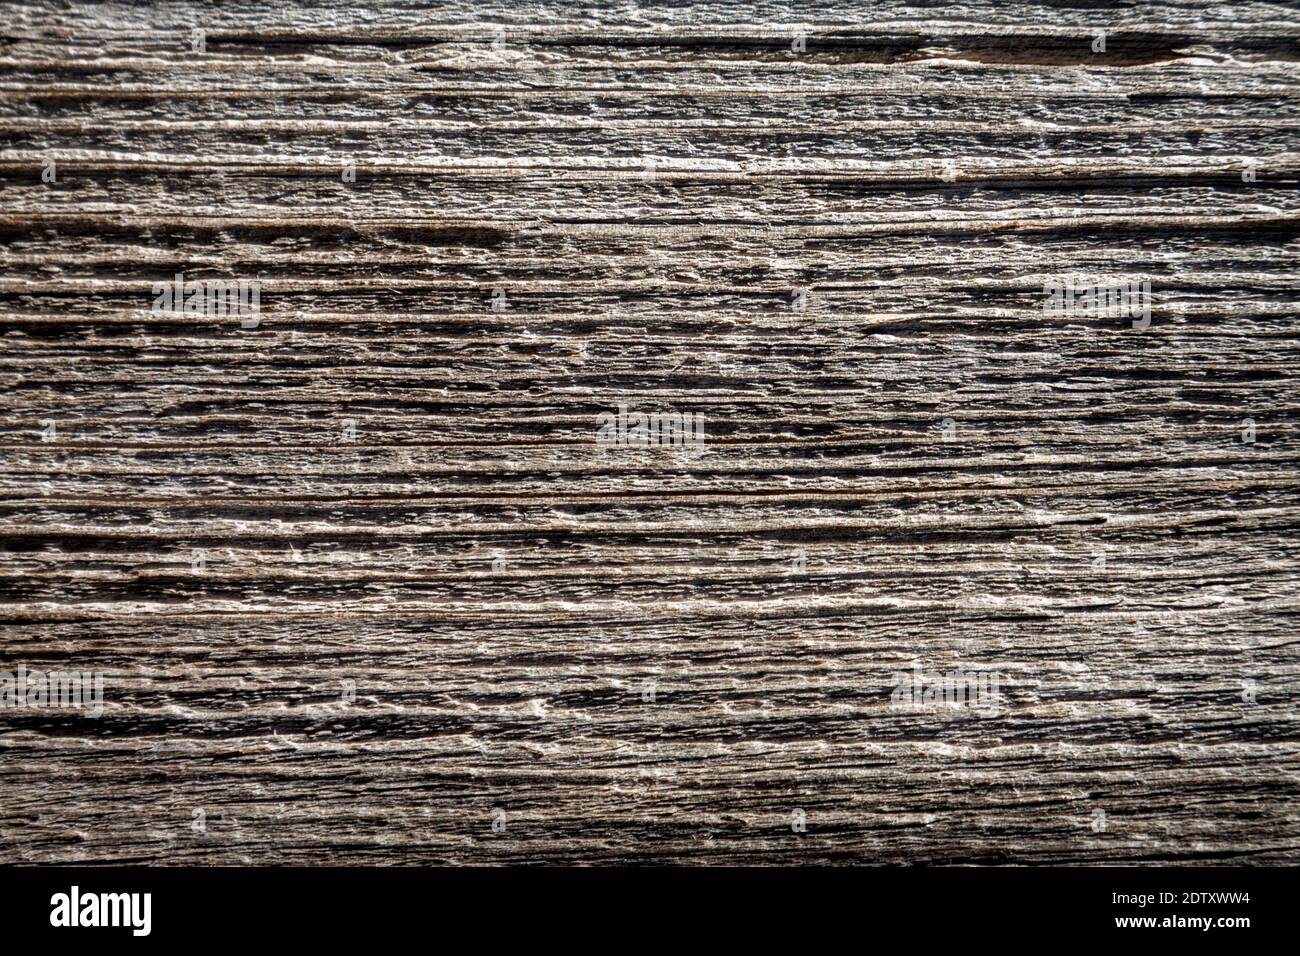 Natürlicher Holzhintergrund. Detaillierte grafische Ressource, frisch geschnittene Kiefernholz-Textur. Panoramabild im Grunge-Stil Stockfoto